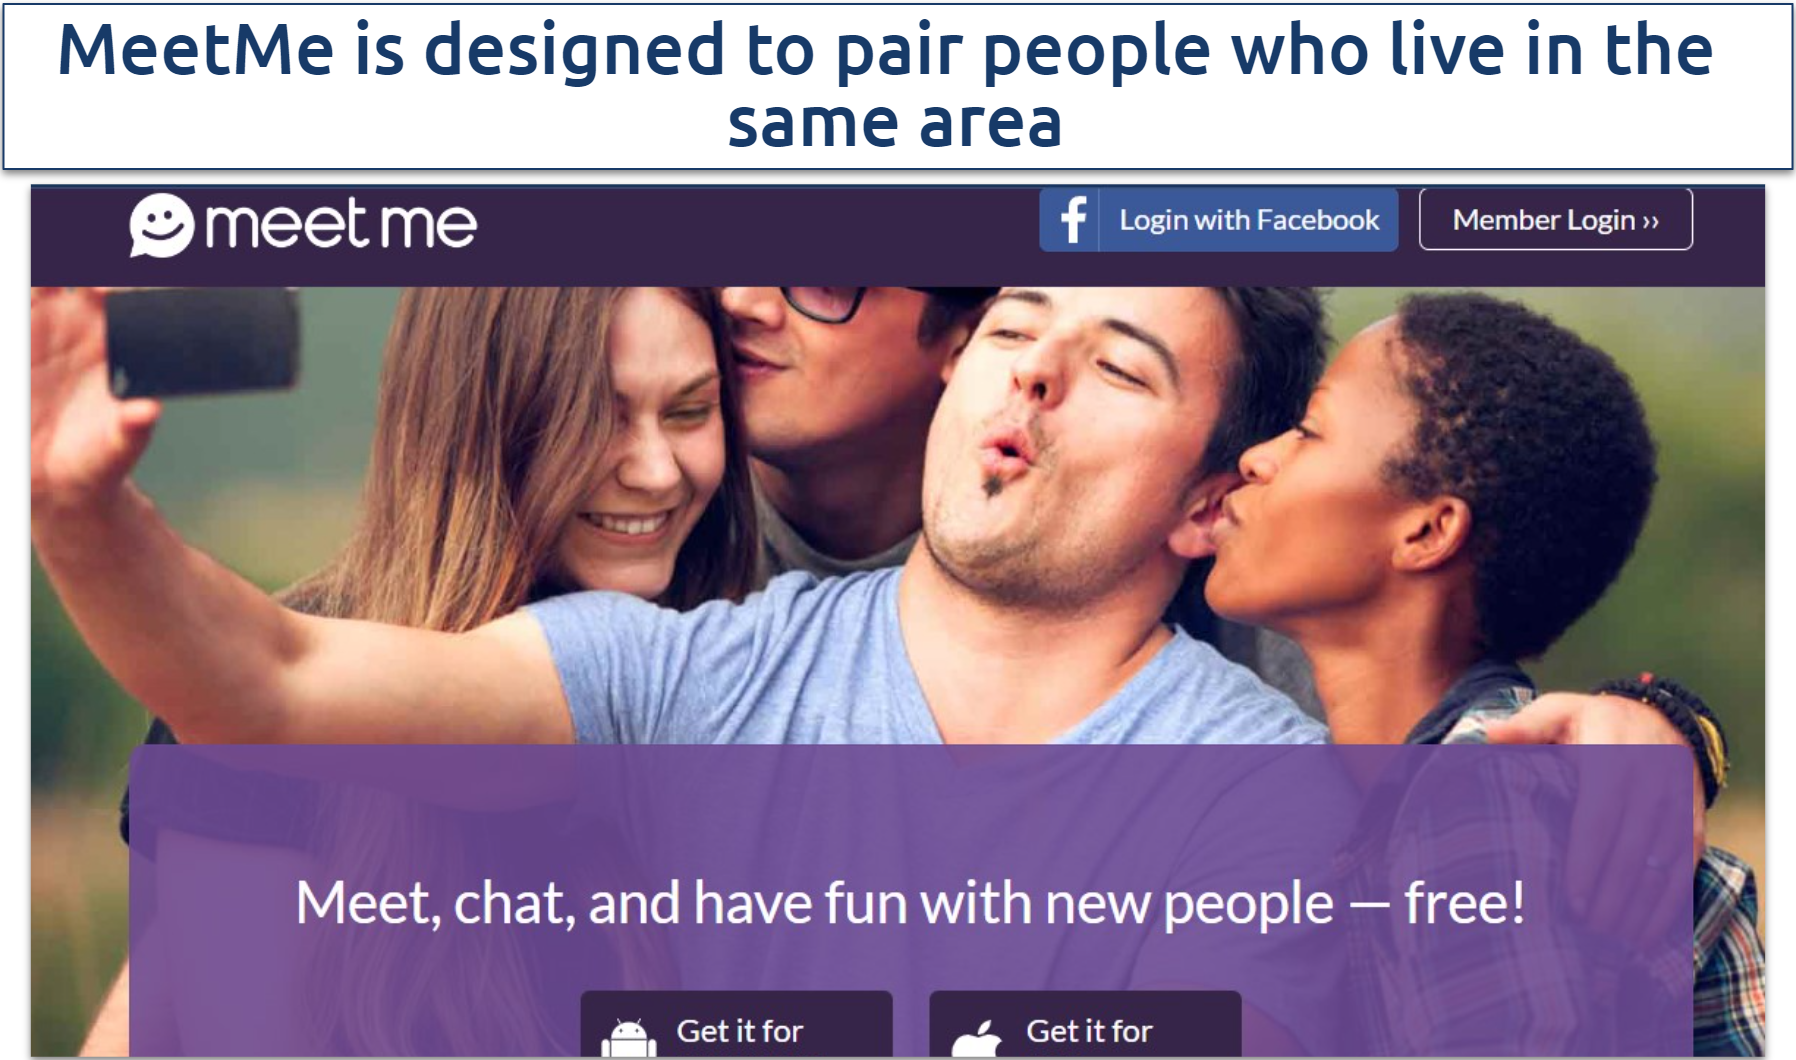 A screenshot of the MeetMe homepage